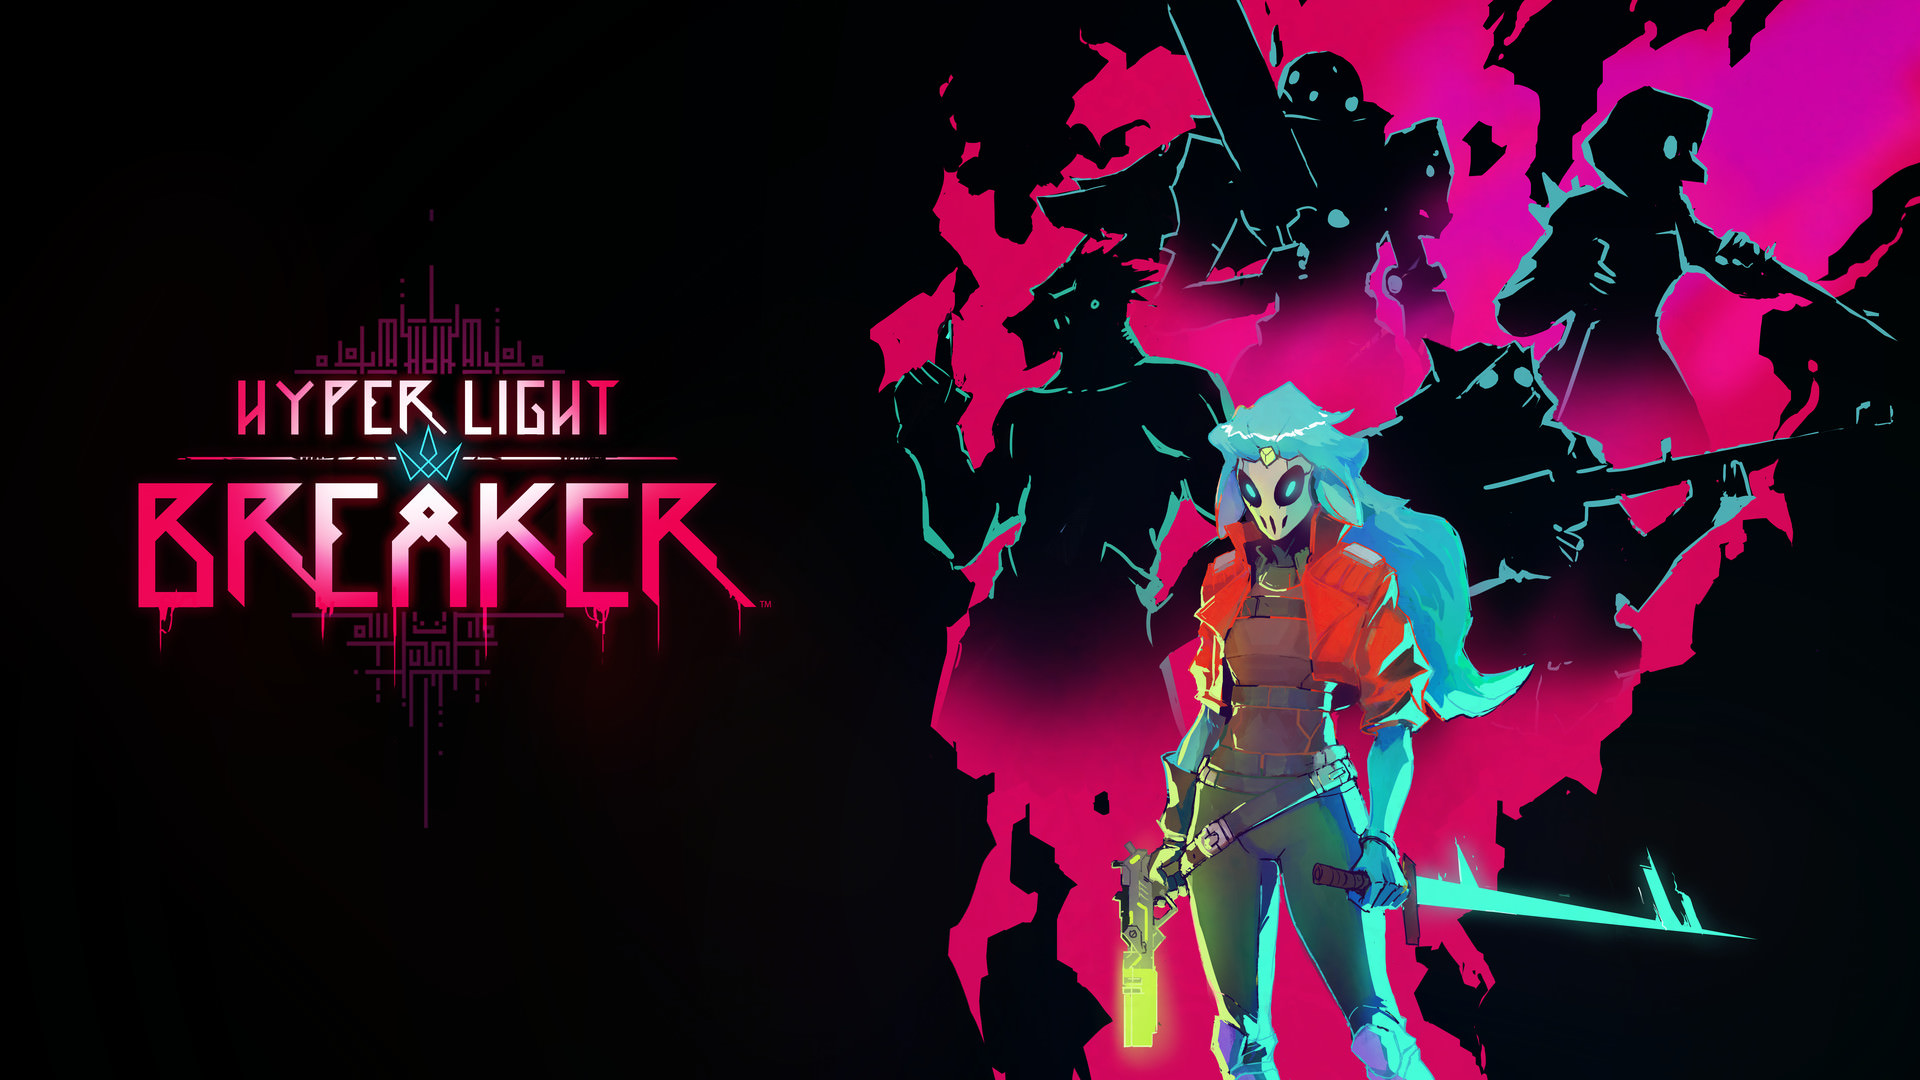 معرفی بازی Hyper Light Breaker با یک تریلر جذاب